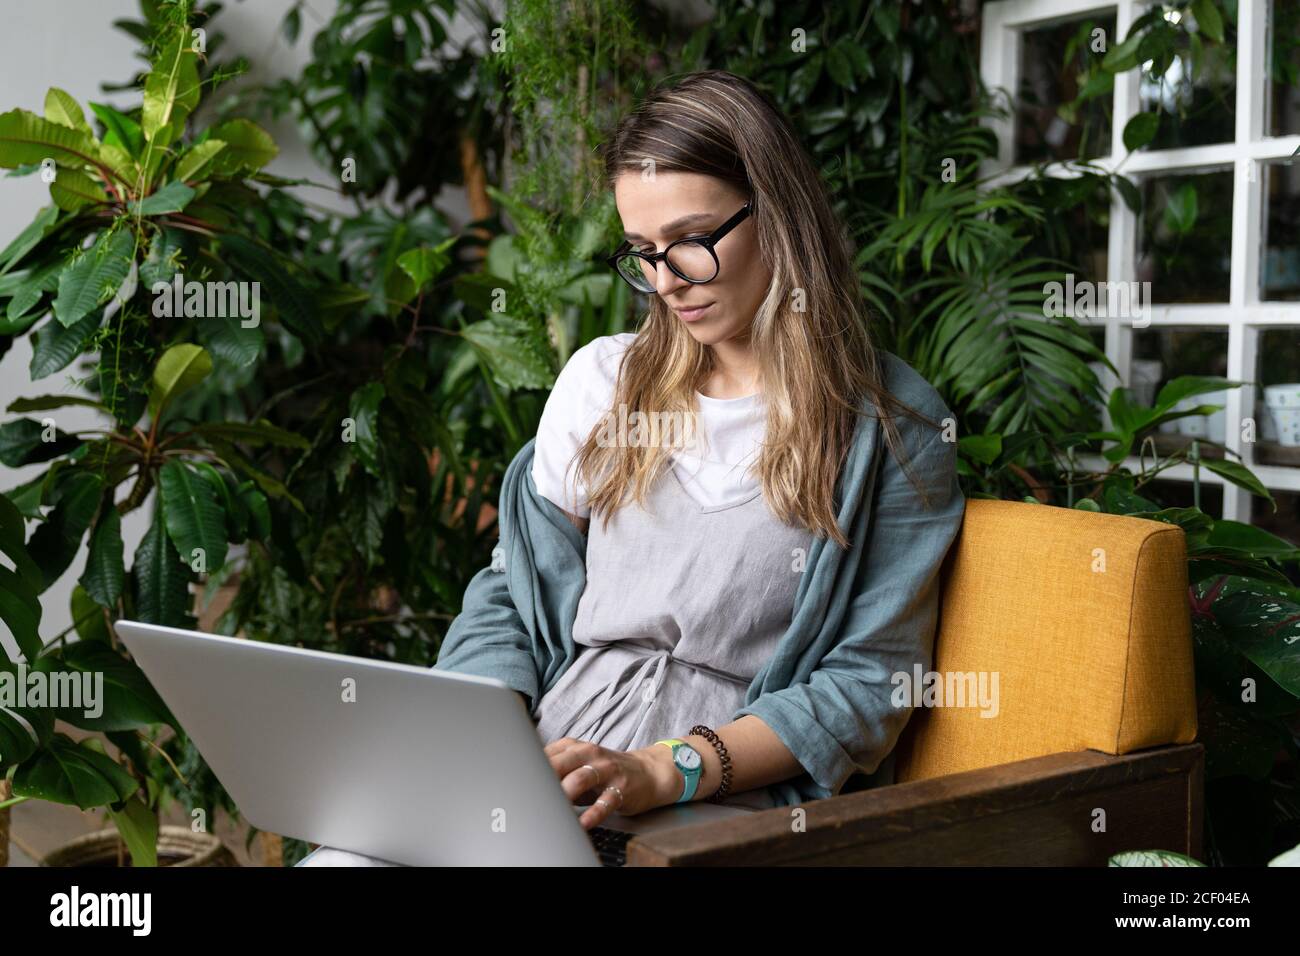 Femme jardinier portant une robe de lin, assise sur une chaise dans une maison verte, travaillant sur un ordinateur portable entouré de plantes. Jardin à la maison, travail à distance, travail à distance. Banque D'Images